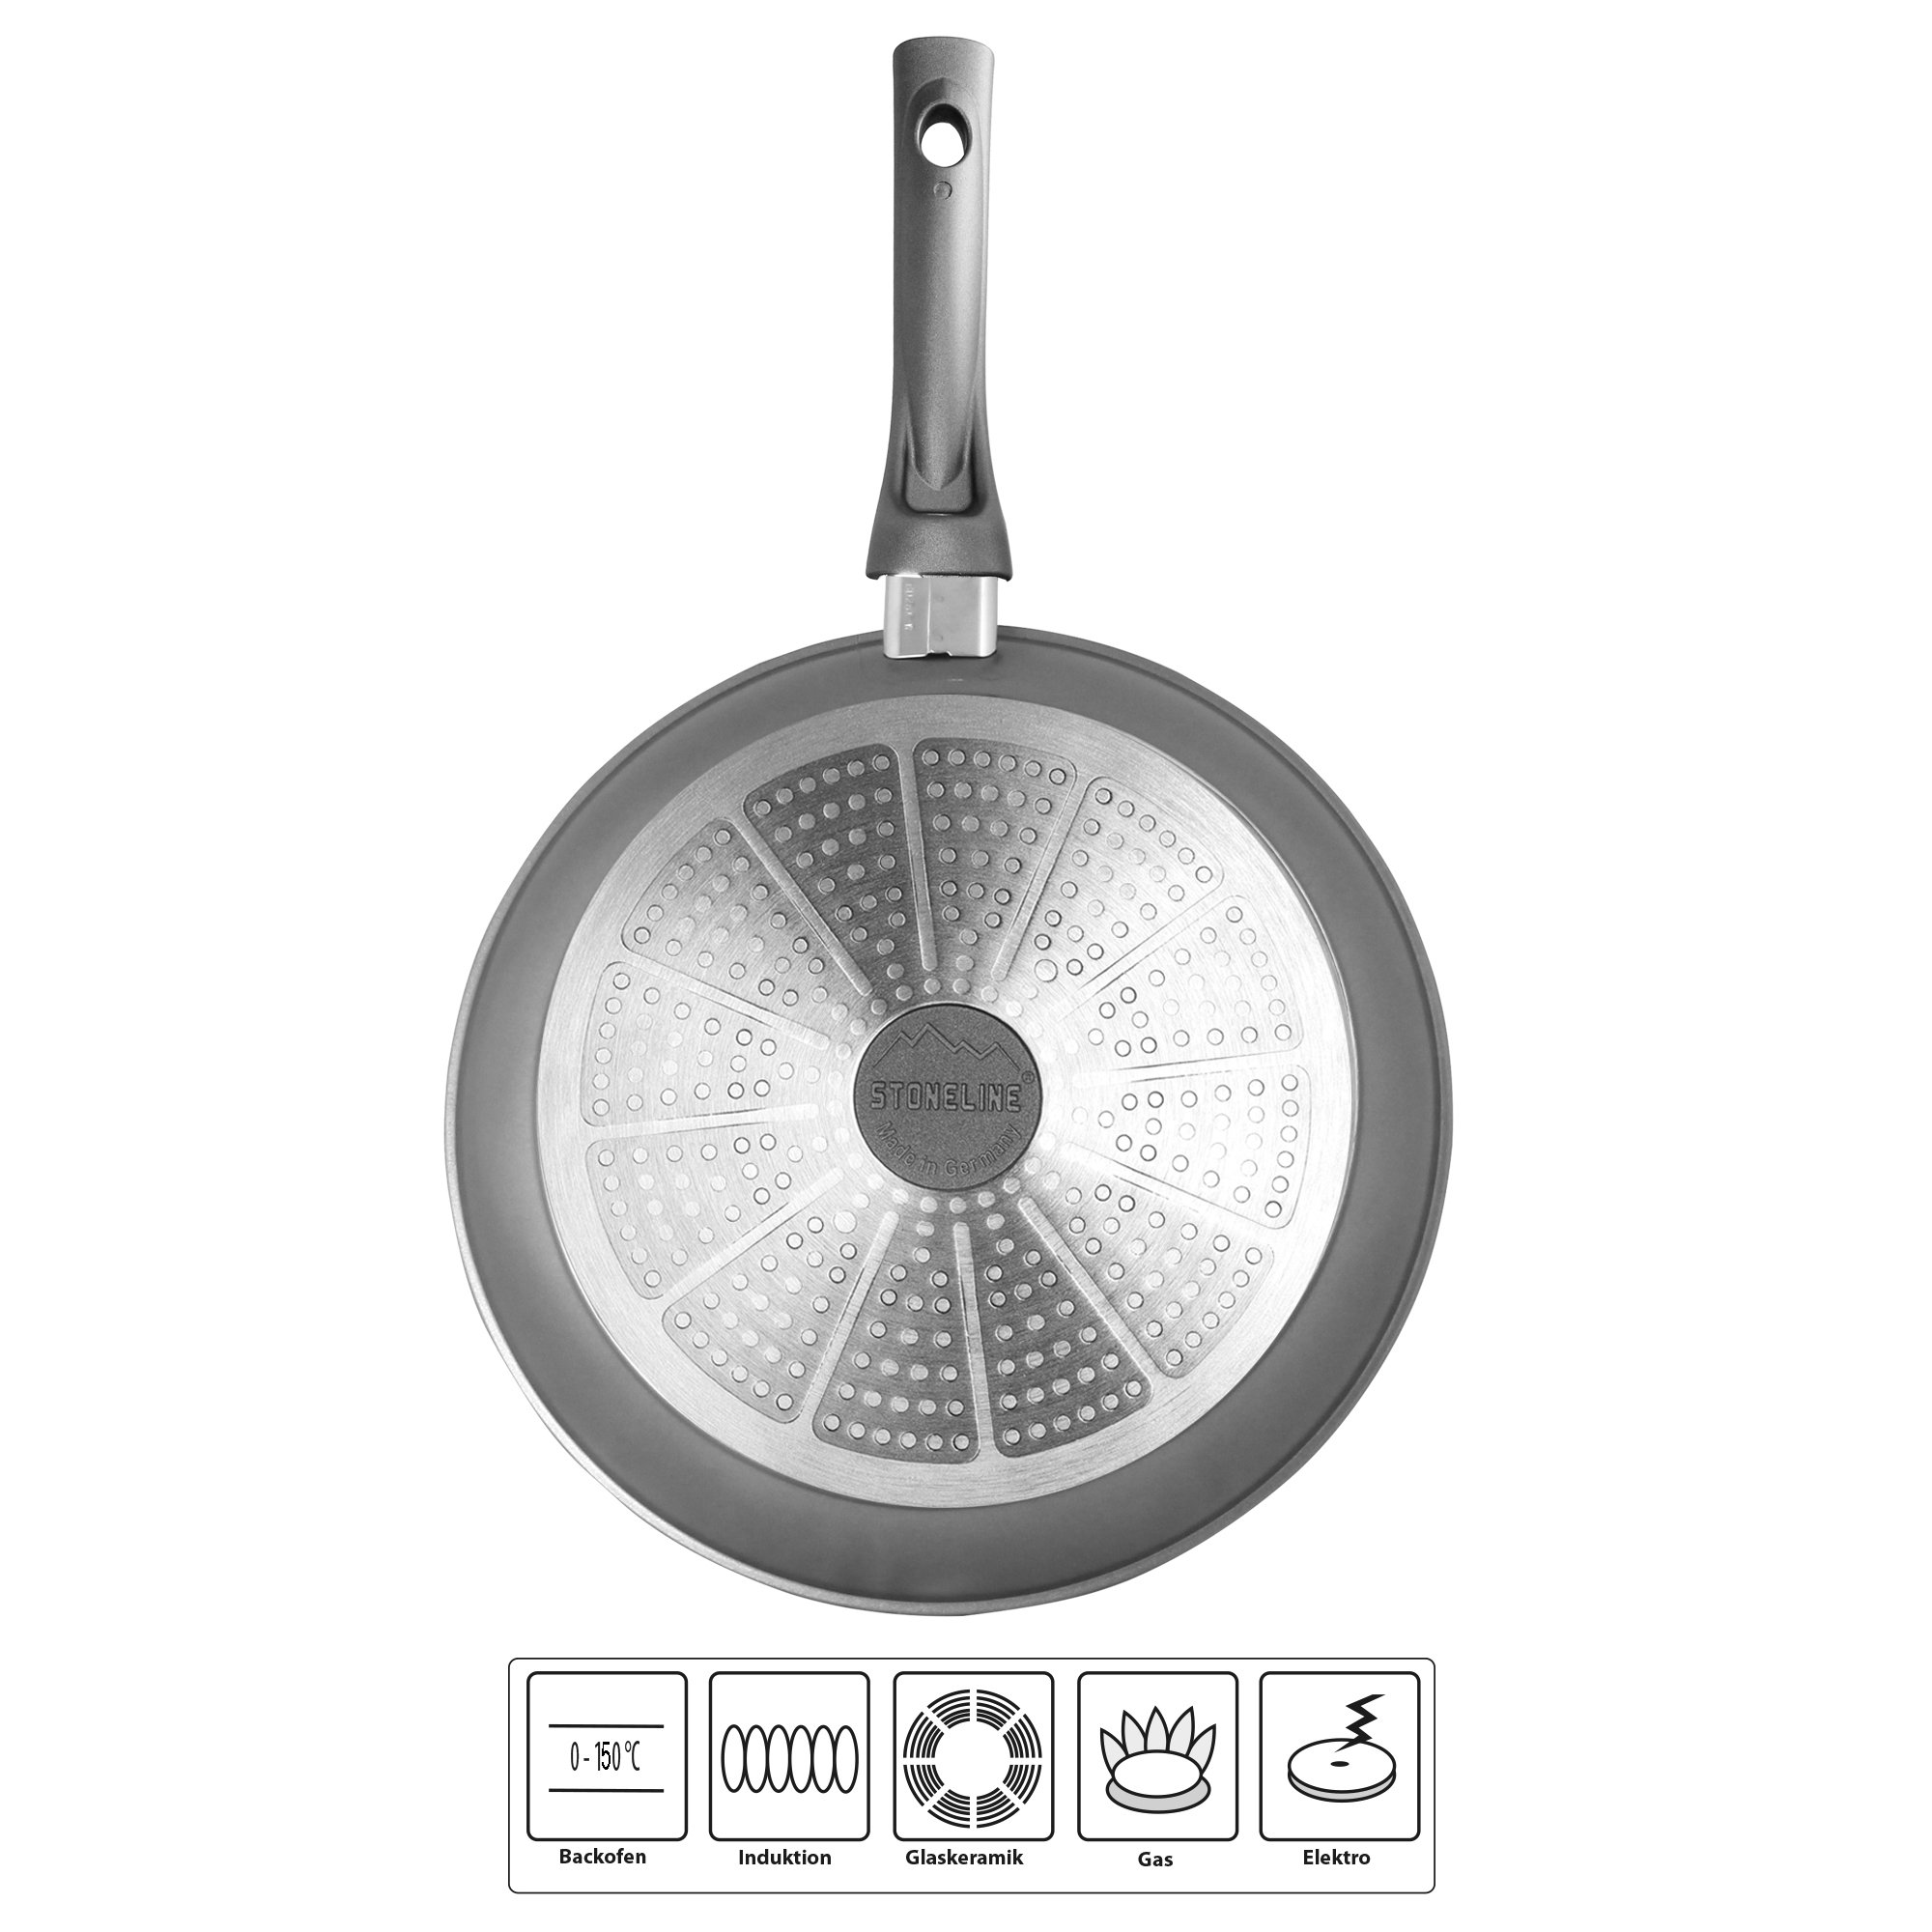 STONELINE® Gourmundo Braising Pan 28 cm, Made in Germany, adatto all'induzione e al forno